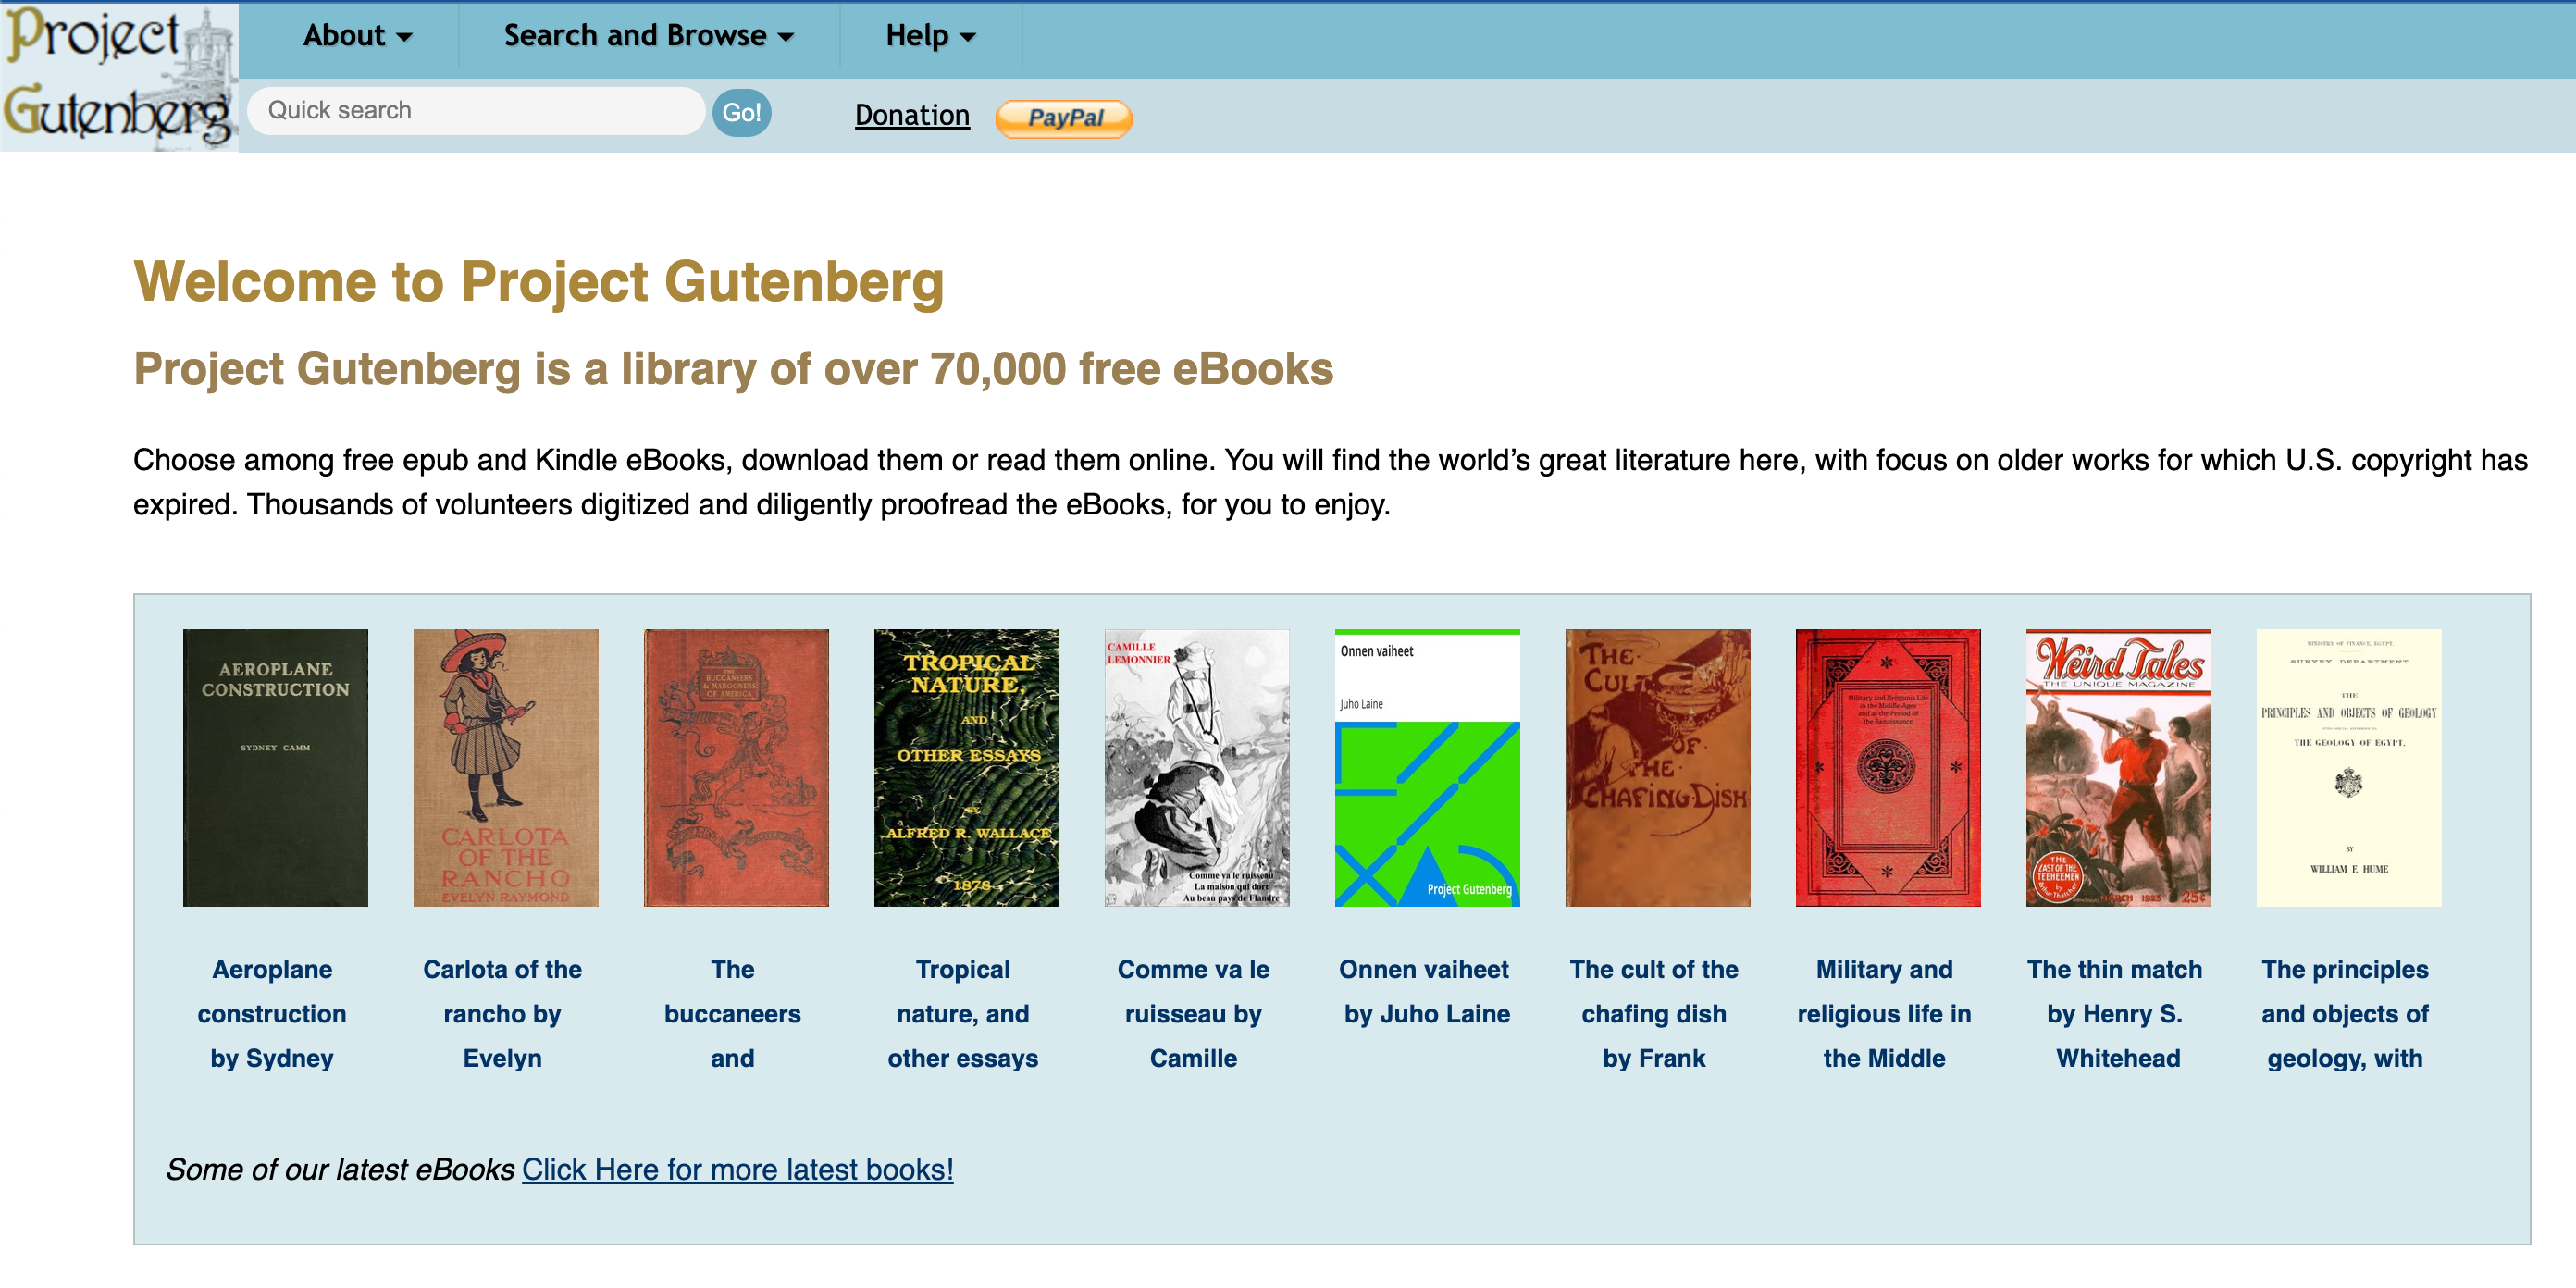 Project Gutenberg's website homepage